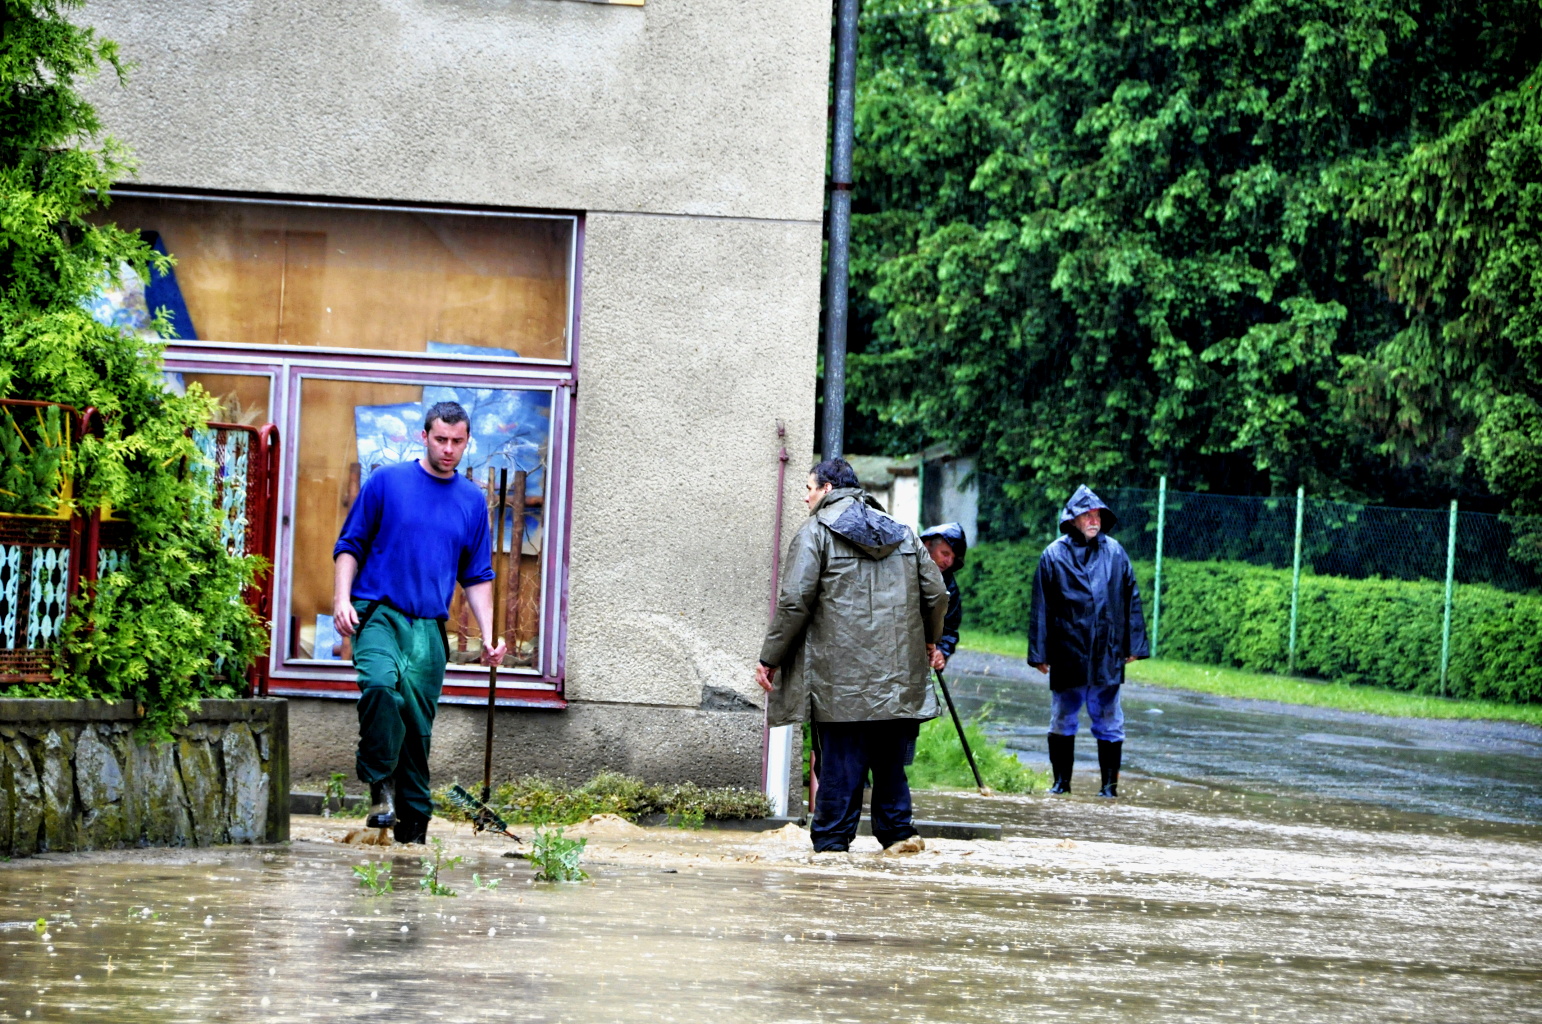 12 bleskove zaplavy Olomoucko 10-6-2013 (2).JPG